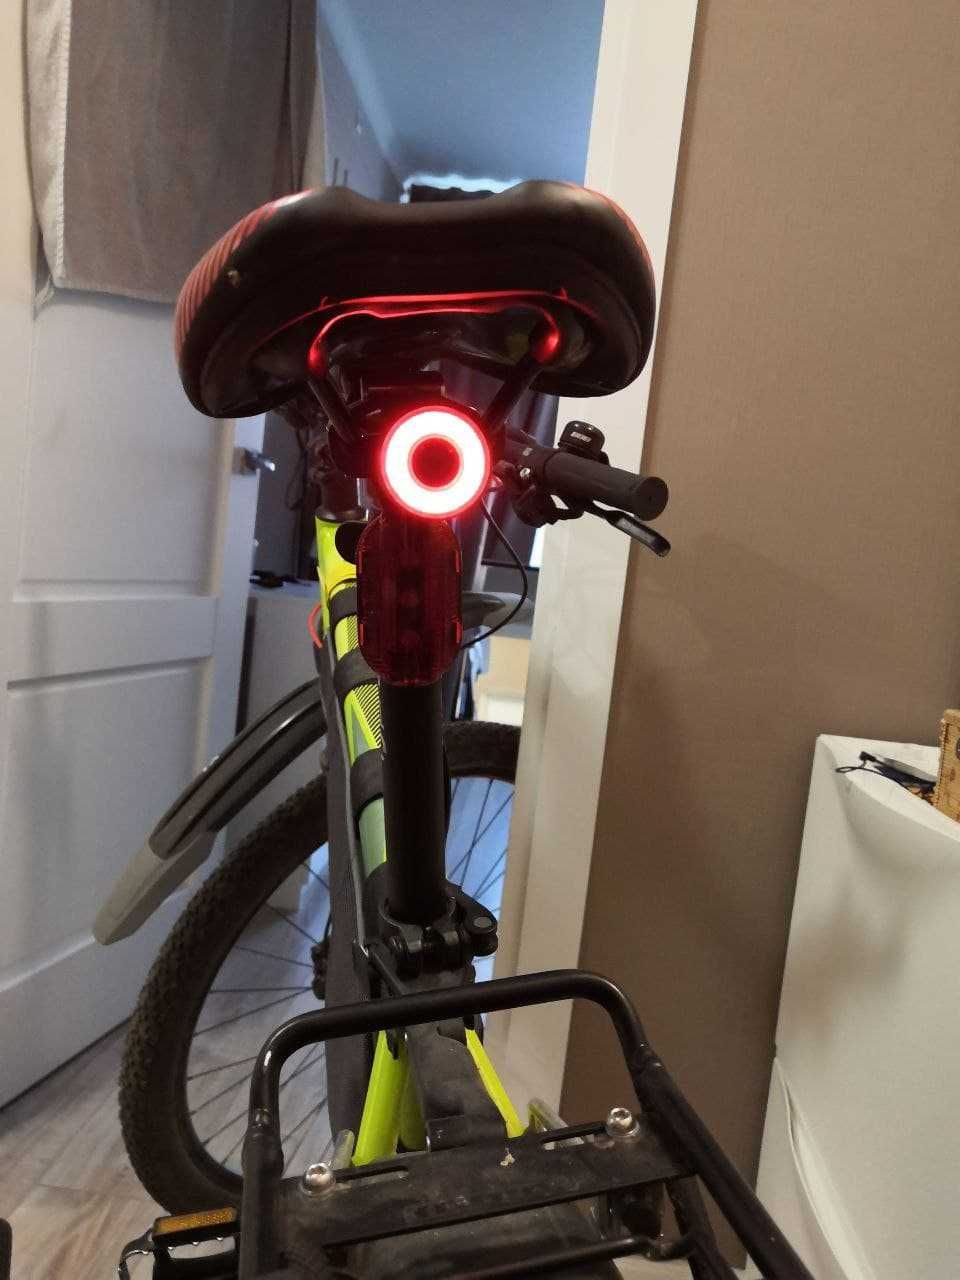 ROCKBROS TL907Q50 велосипедный задний фонарь 2 КРЕПЛЕНИЯ  стоп сигнал